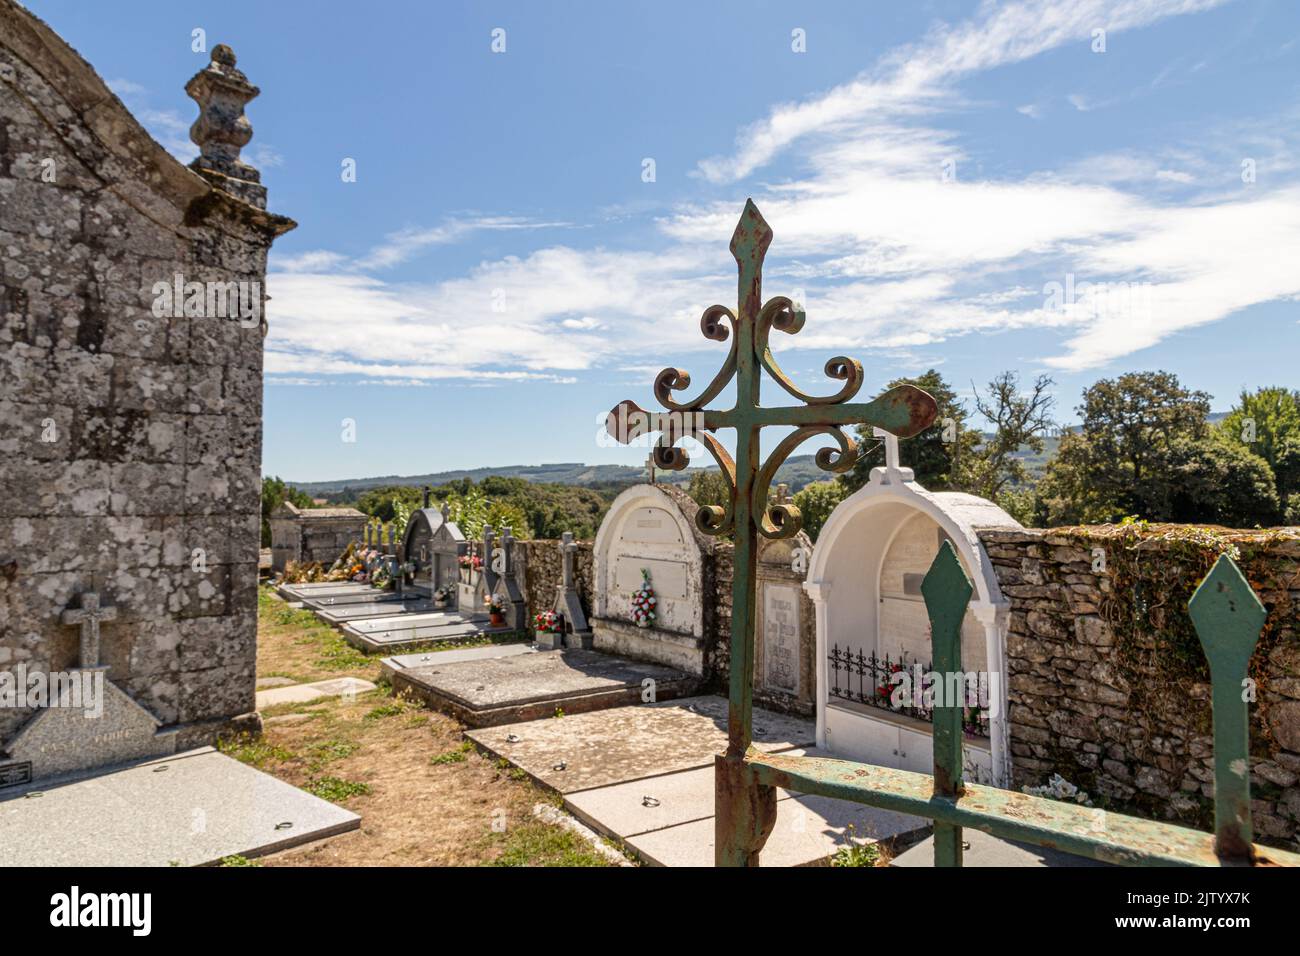 Boveda de Mera, España. El cementerio o cementerio de la iglesia Foto de stock